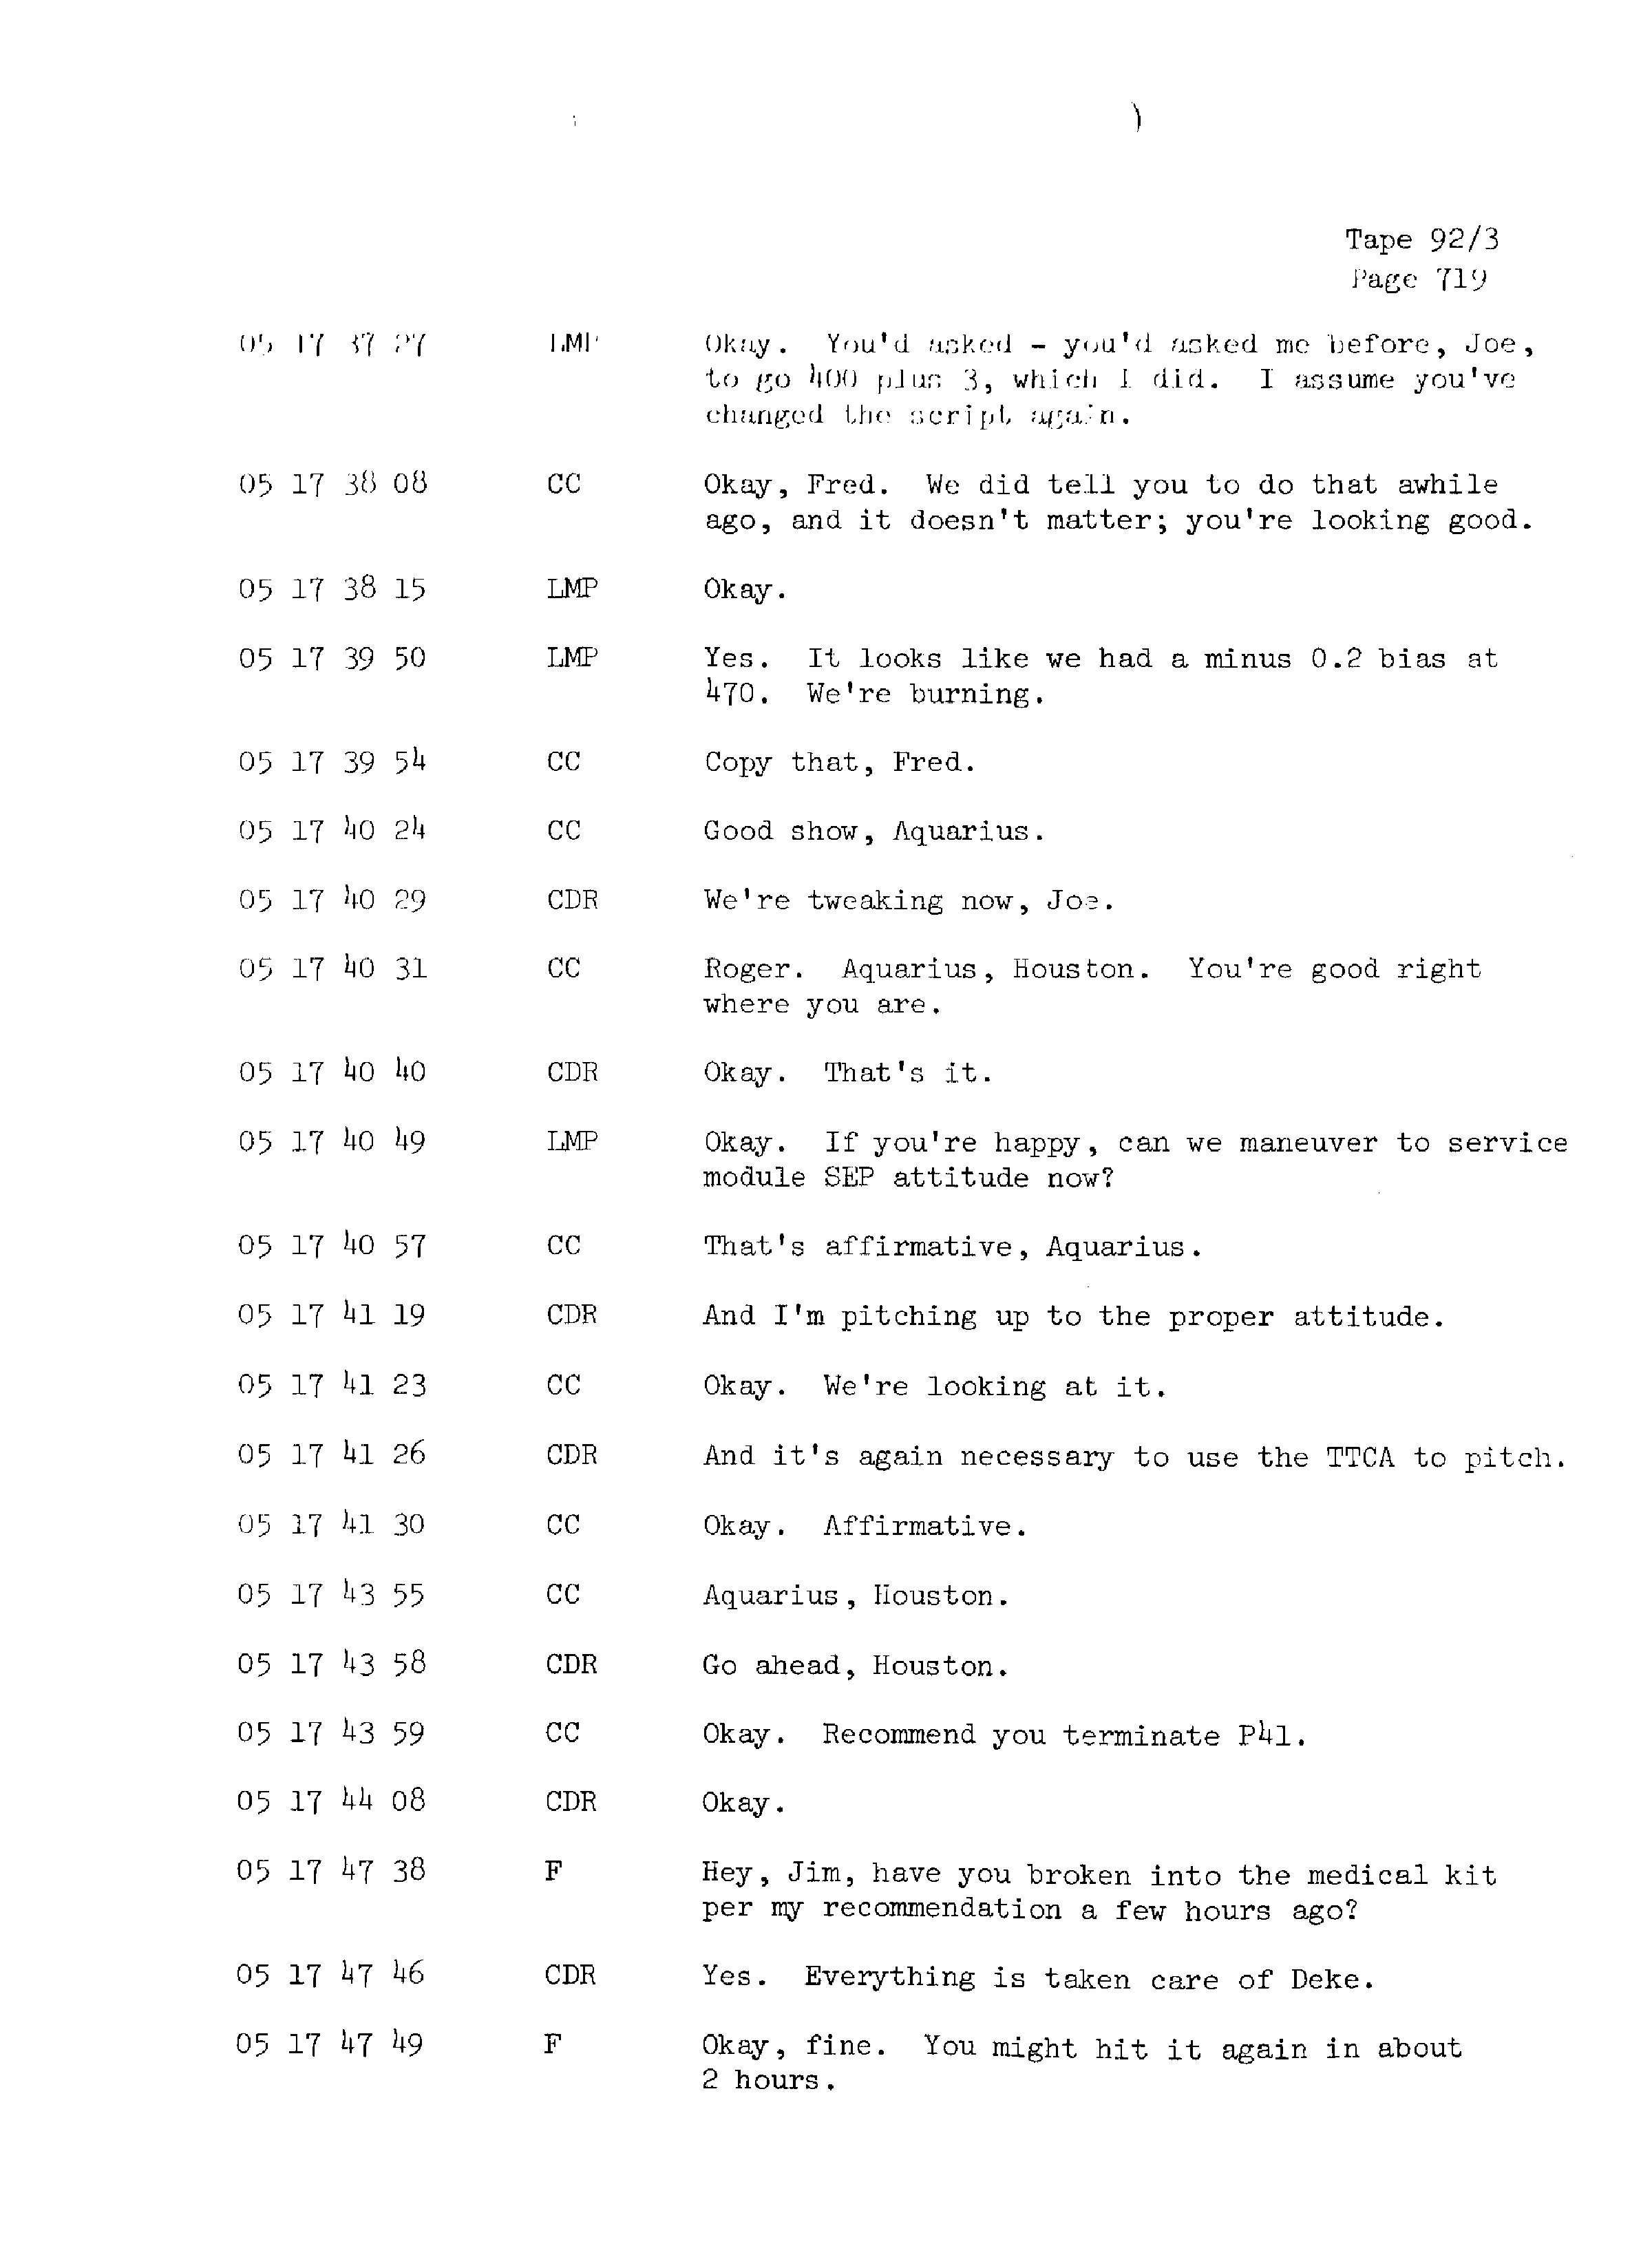 Page 726 of Apollo 13’s original transcript